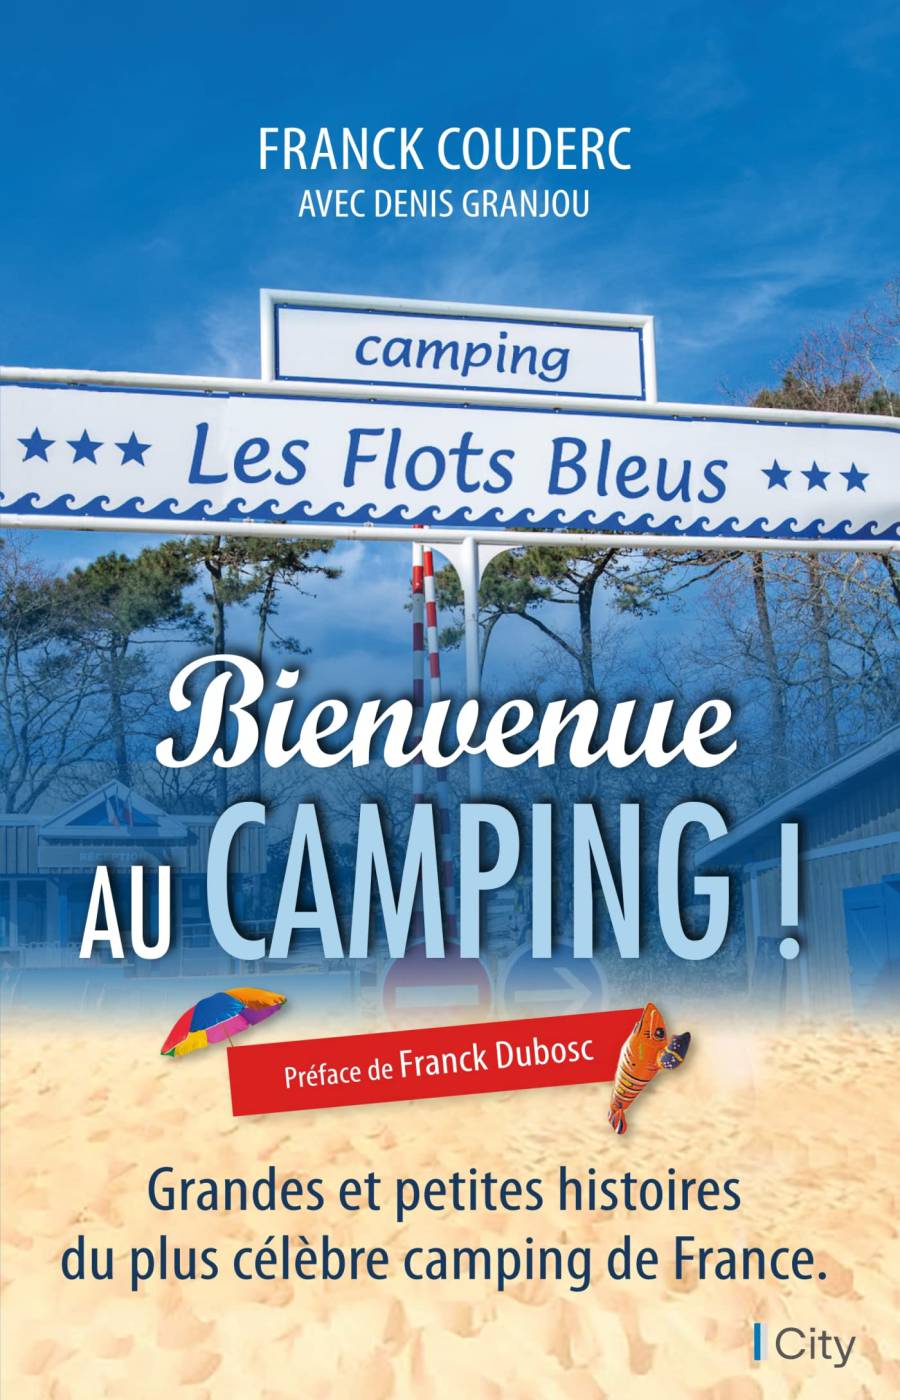 Bienvenue au Camping ! - Franck Couderc avec Denis Granjou